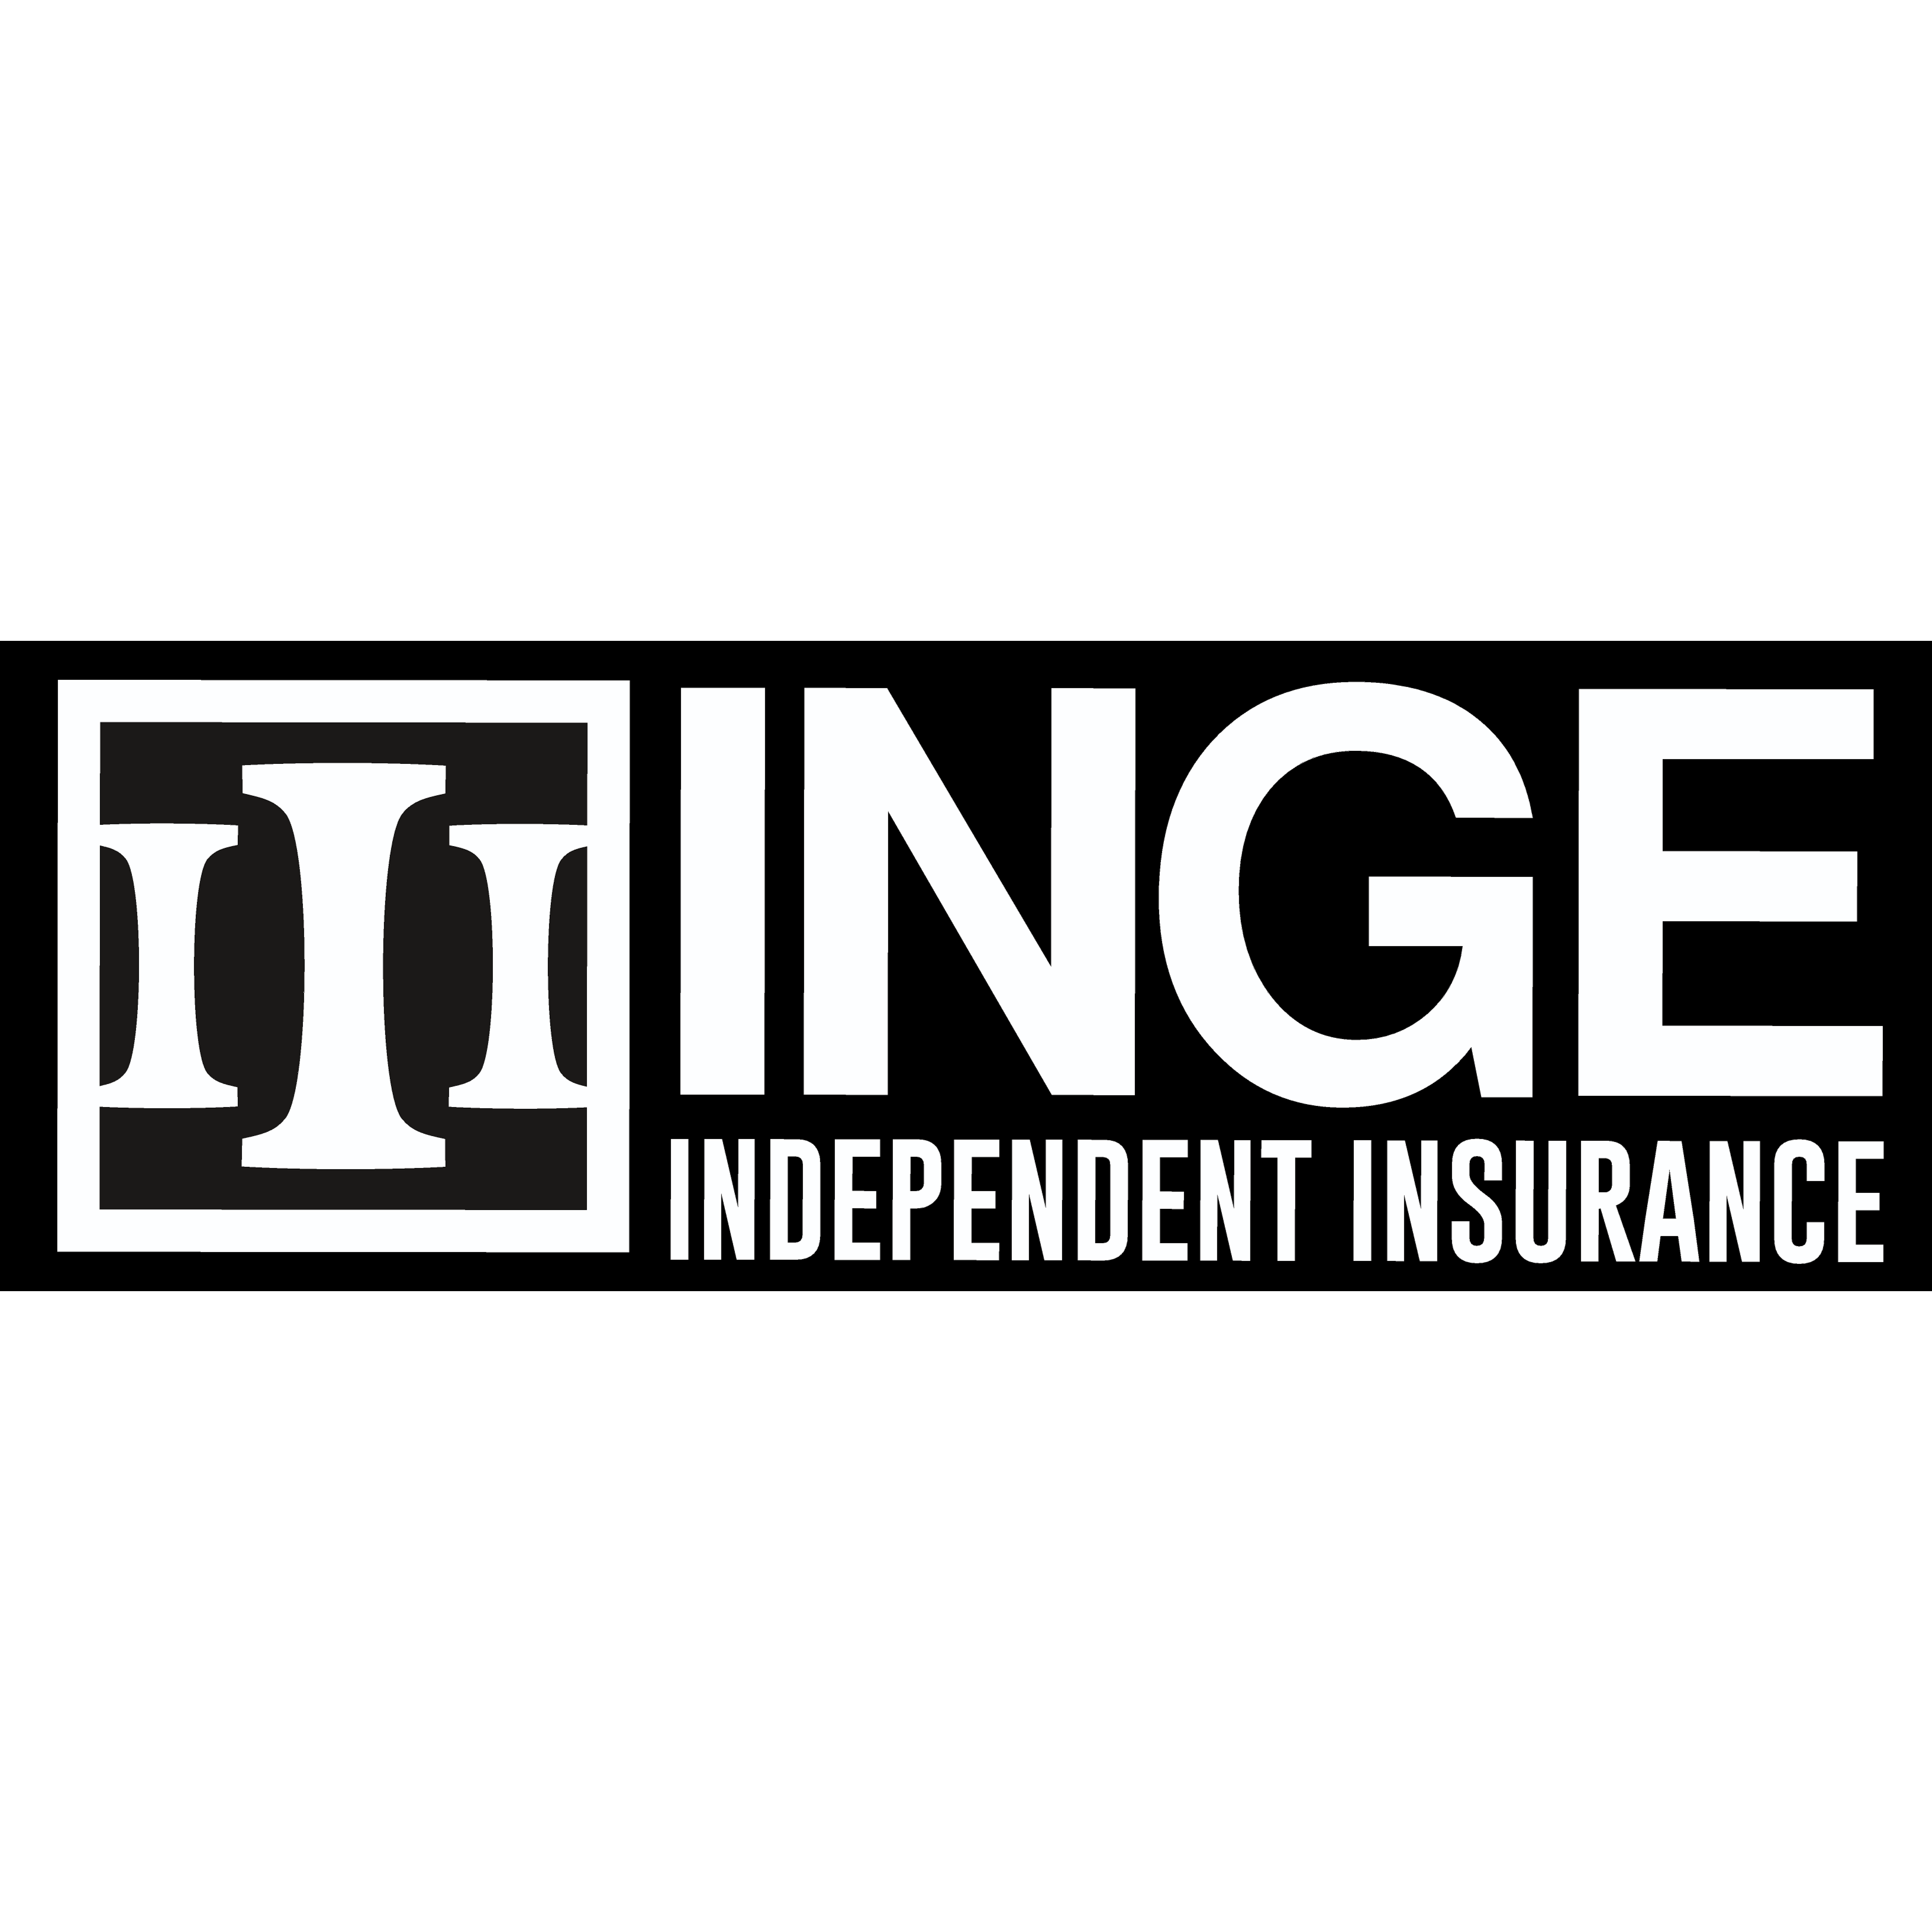 Inge Independent Insurance - Van Buren, AR - (479)262-6366 | ShowMeLocal.com